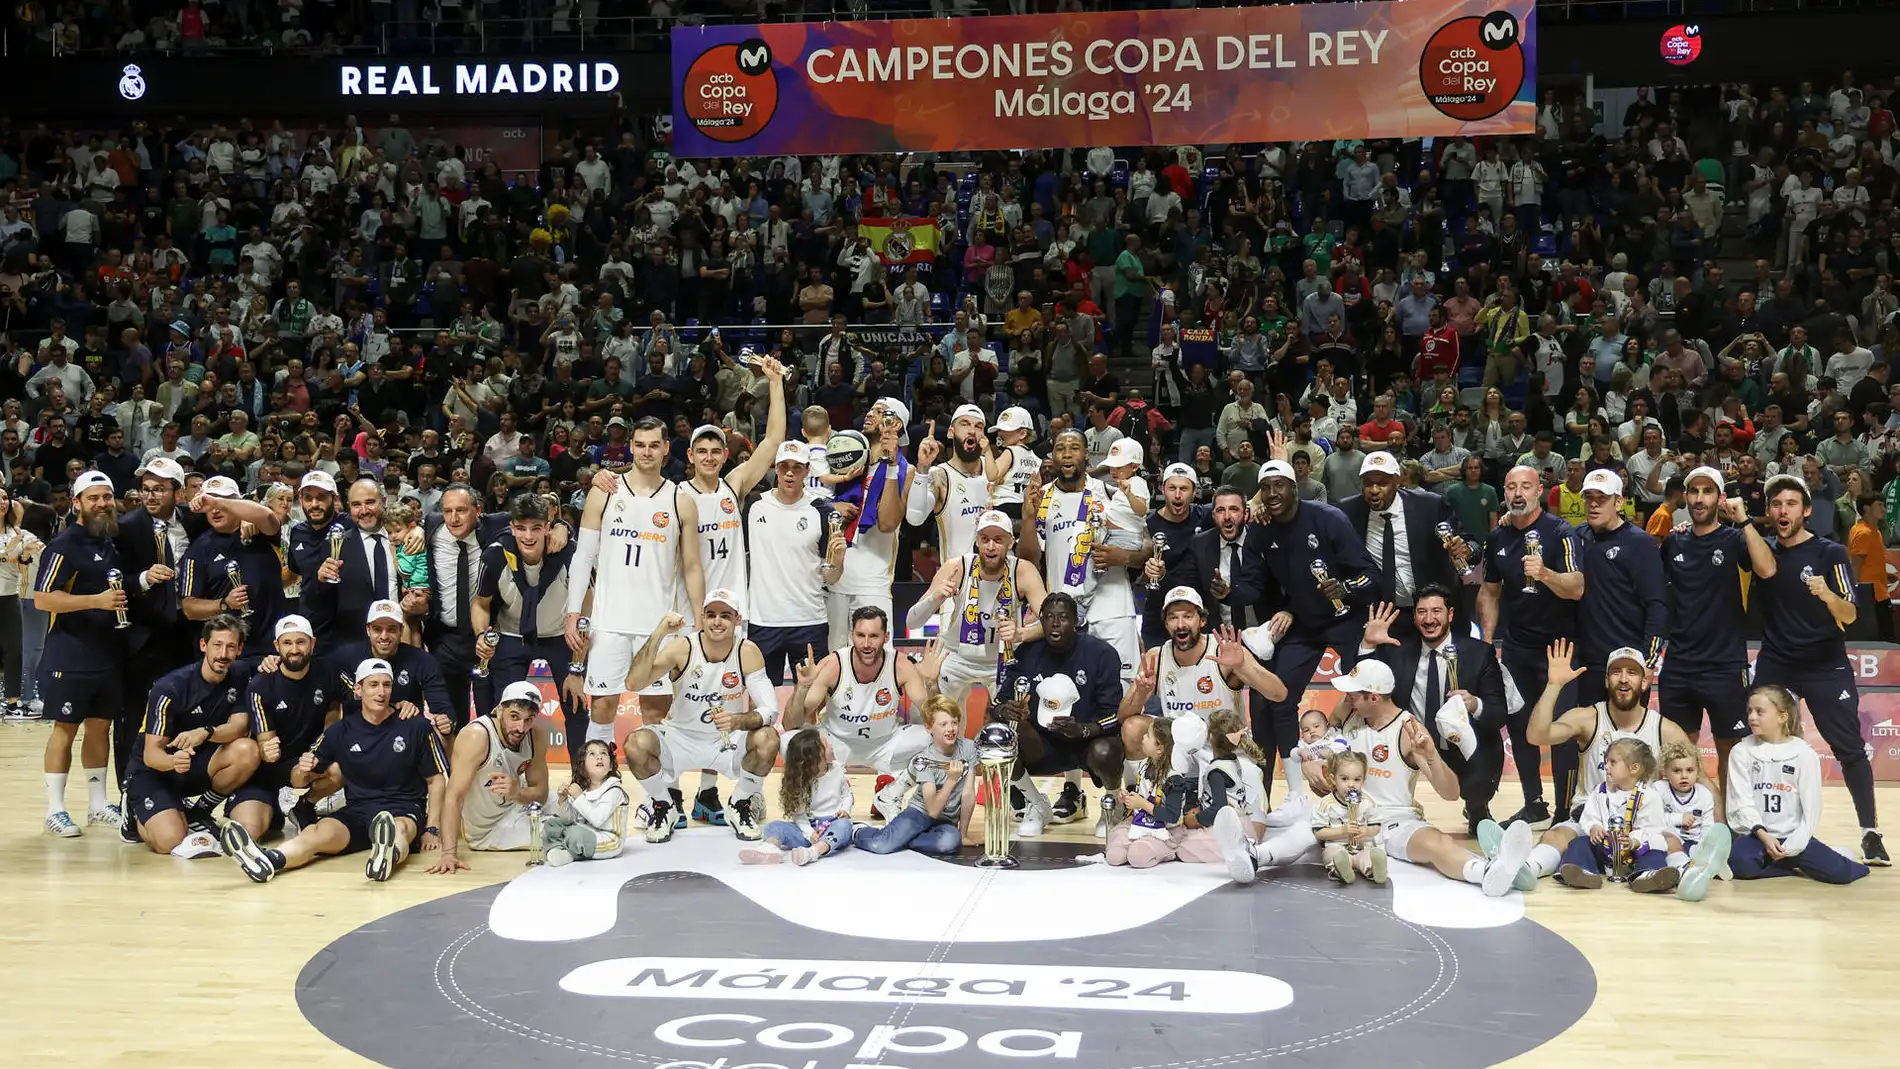 Los jugadores del Real Madrid celebran con la copa la victoria ante el Barça, proclamandose campeones de la Copa del Rey de baloncesto